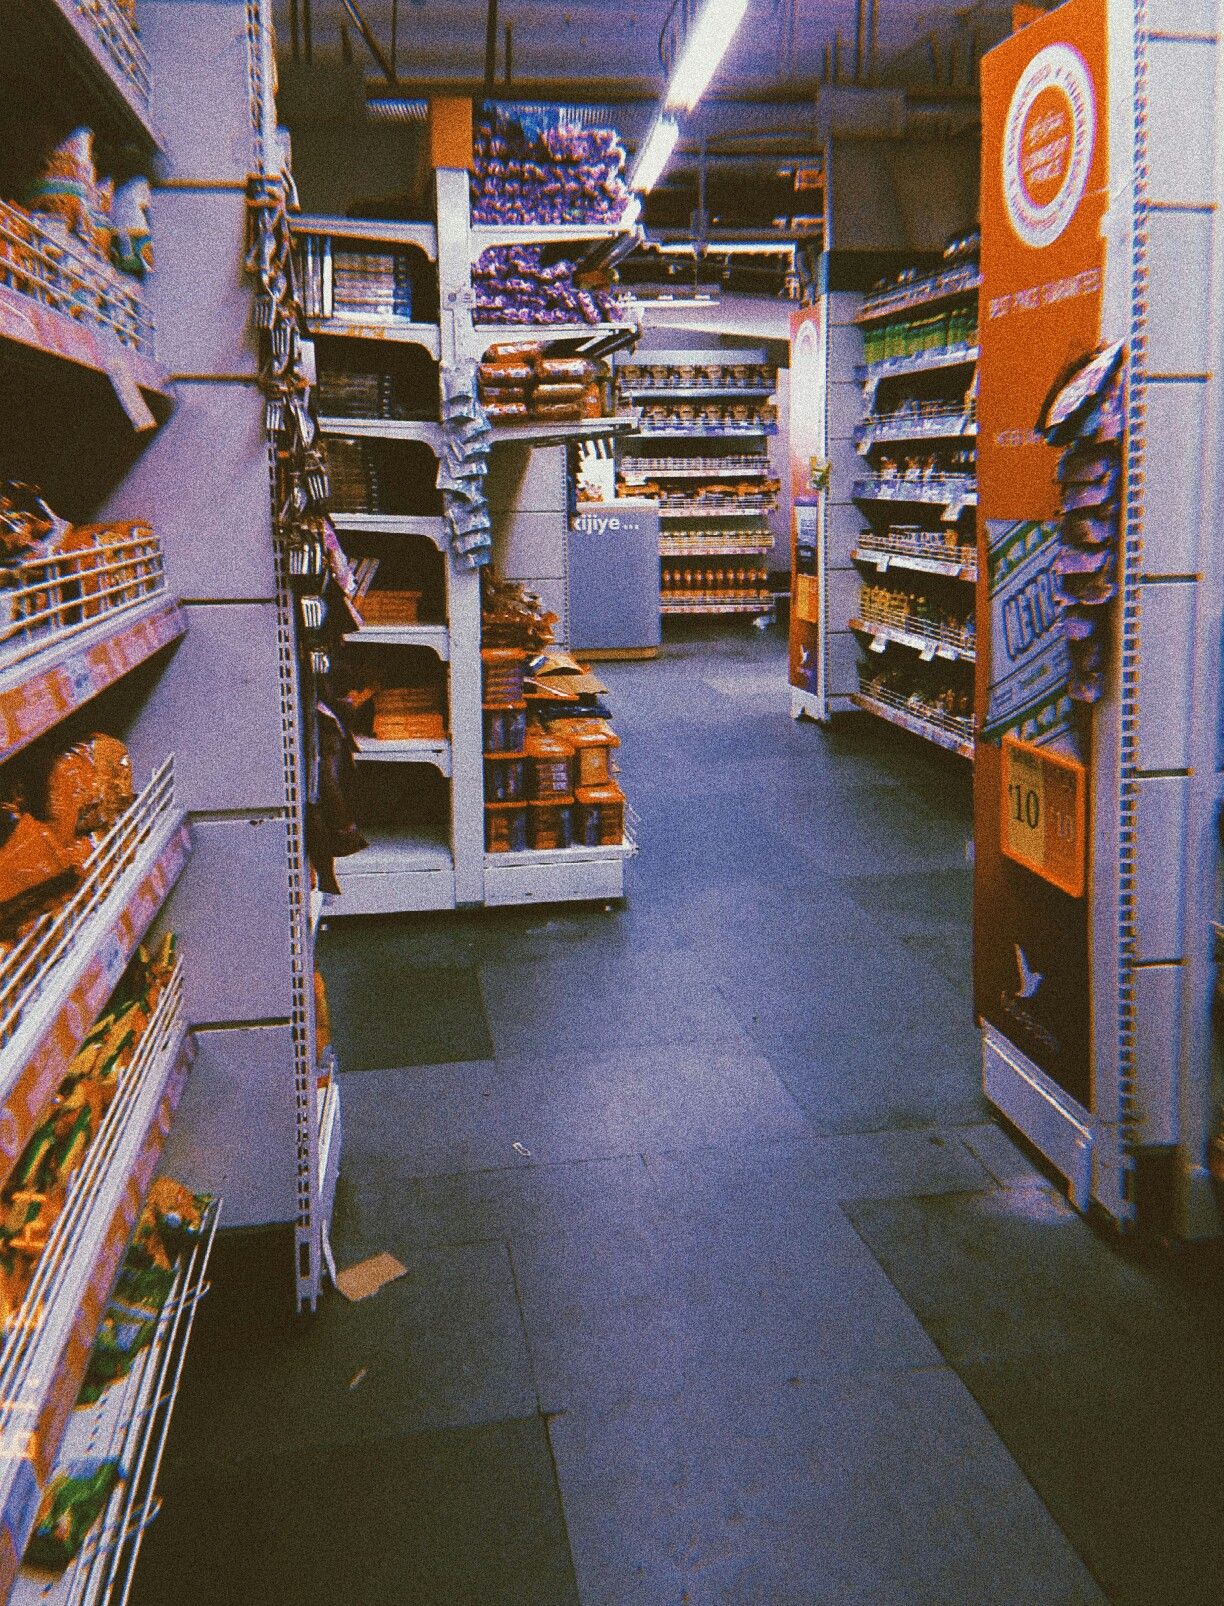 Grocery store aesthetics 2.0